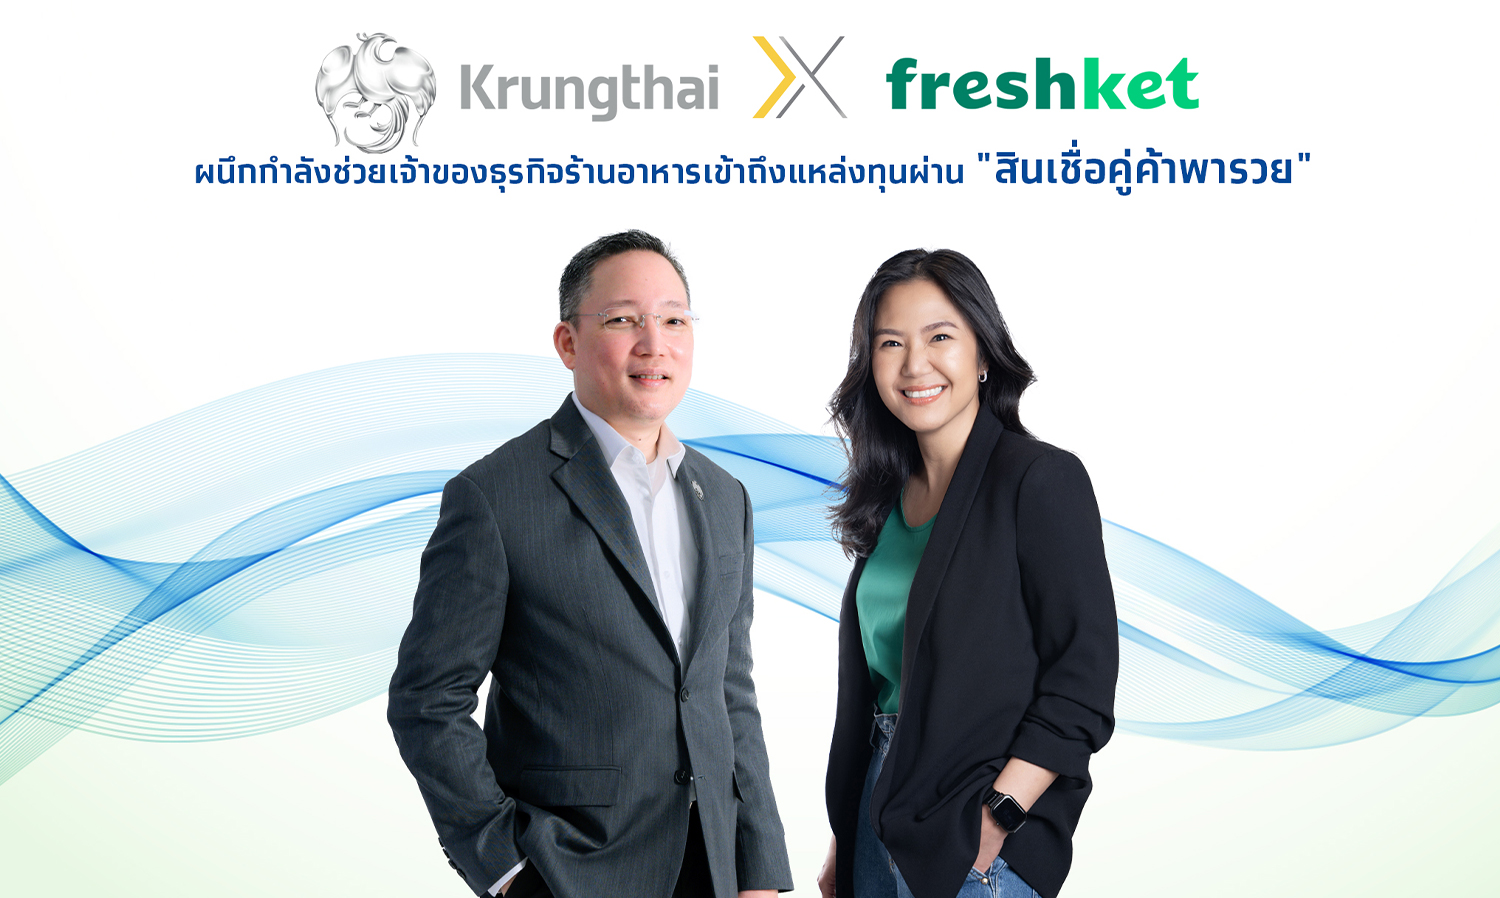 กรุงไทยผนึก freshket ช่วย SME ร้านอาหาร ให้เข้าถึงแหล่งทุนผ่าน “สินเชื่อคู่ค้าพารวย” ฝ่าวิกฤตเศรษฐกิจ